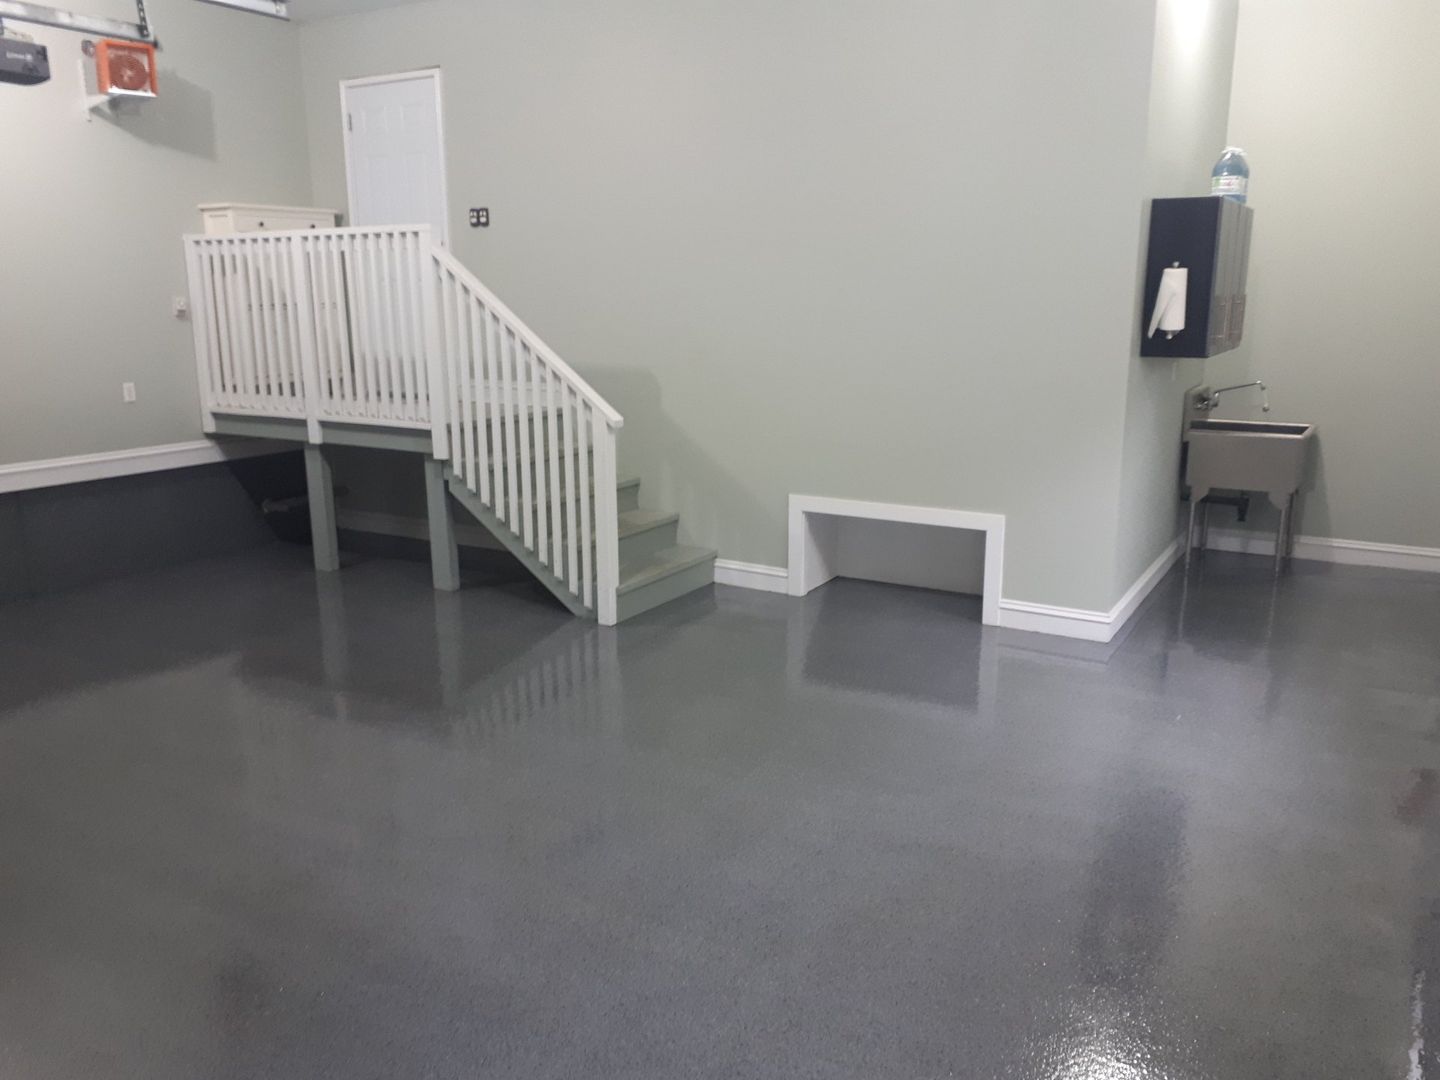 Garage epoxy floor in Fredericton, NB